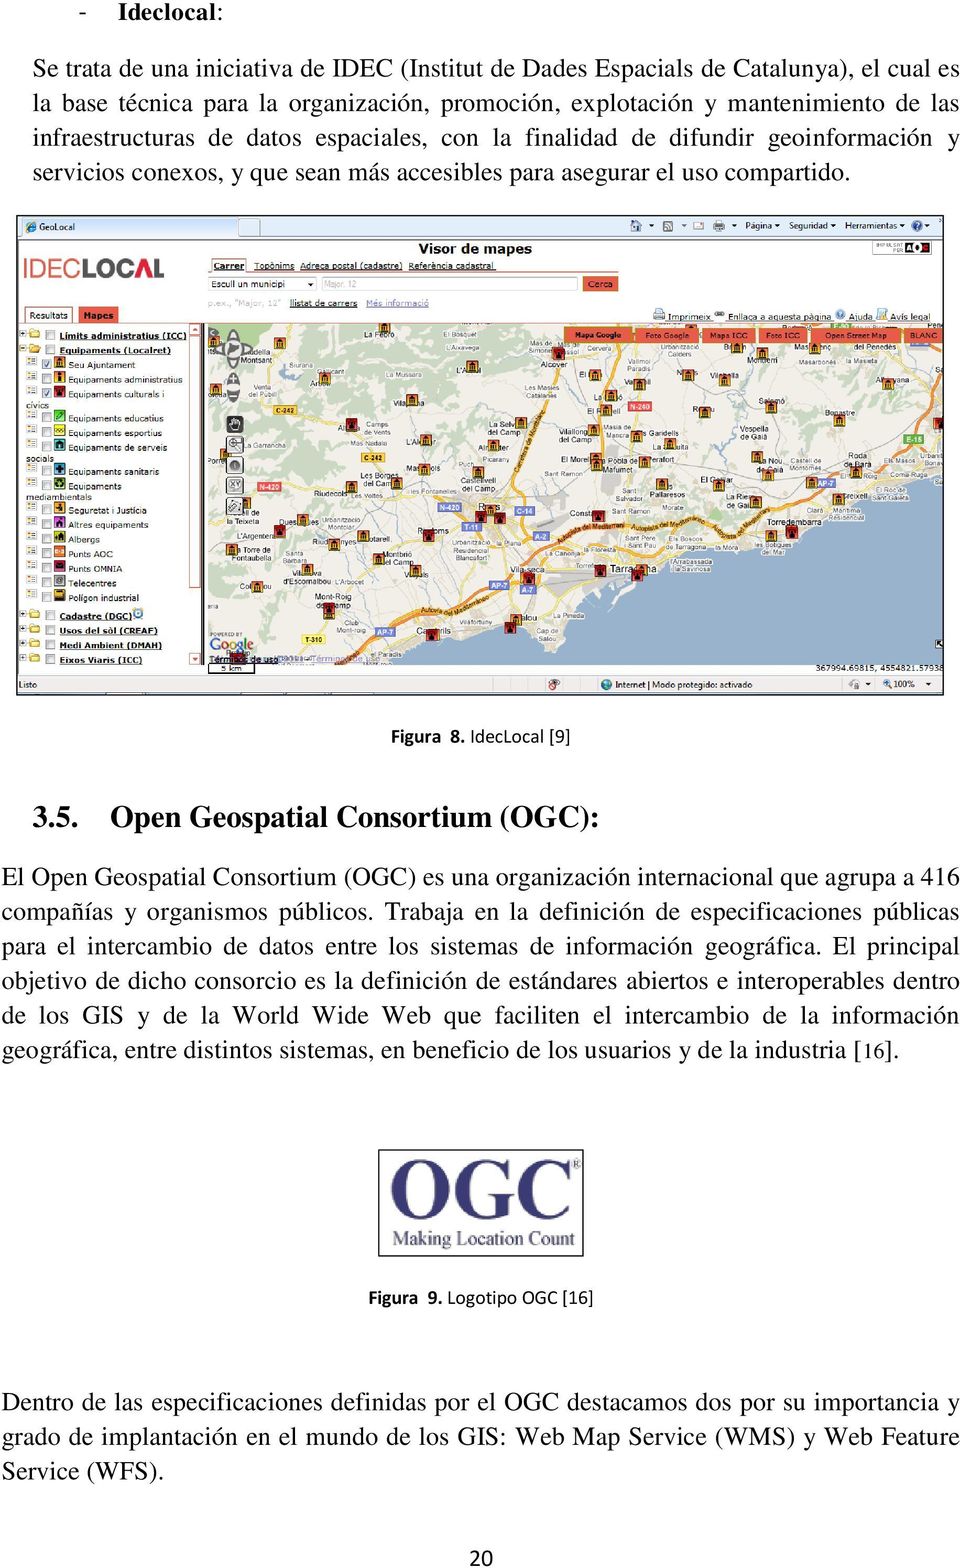 Open Geospatial Consortium (OGC): El Open Geospatial Consortium (OGC) es una organización internacional que agrupa a 416 compañías y organismos públicos.